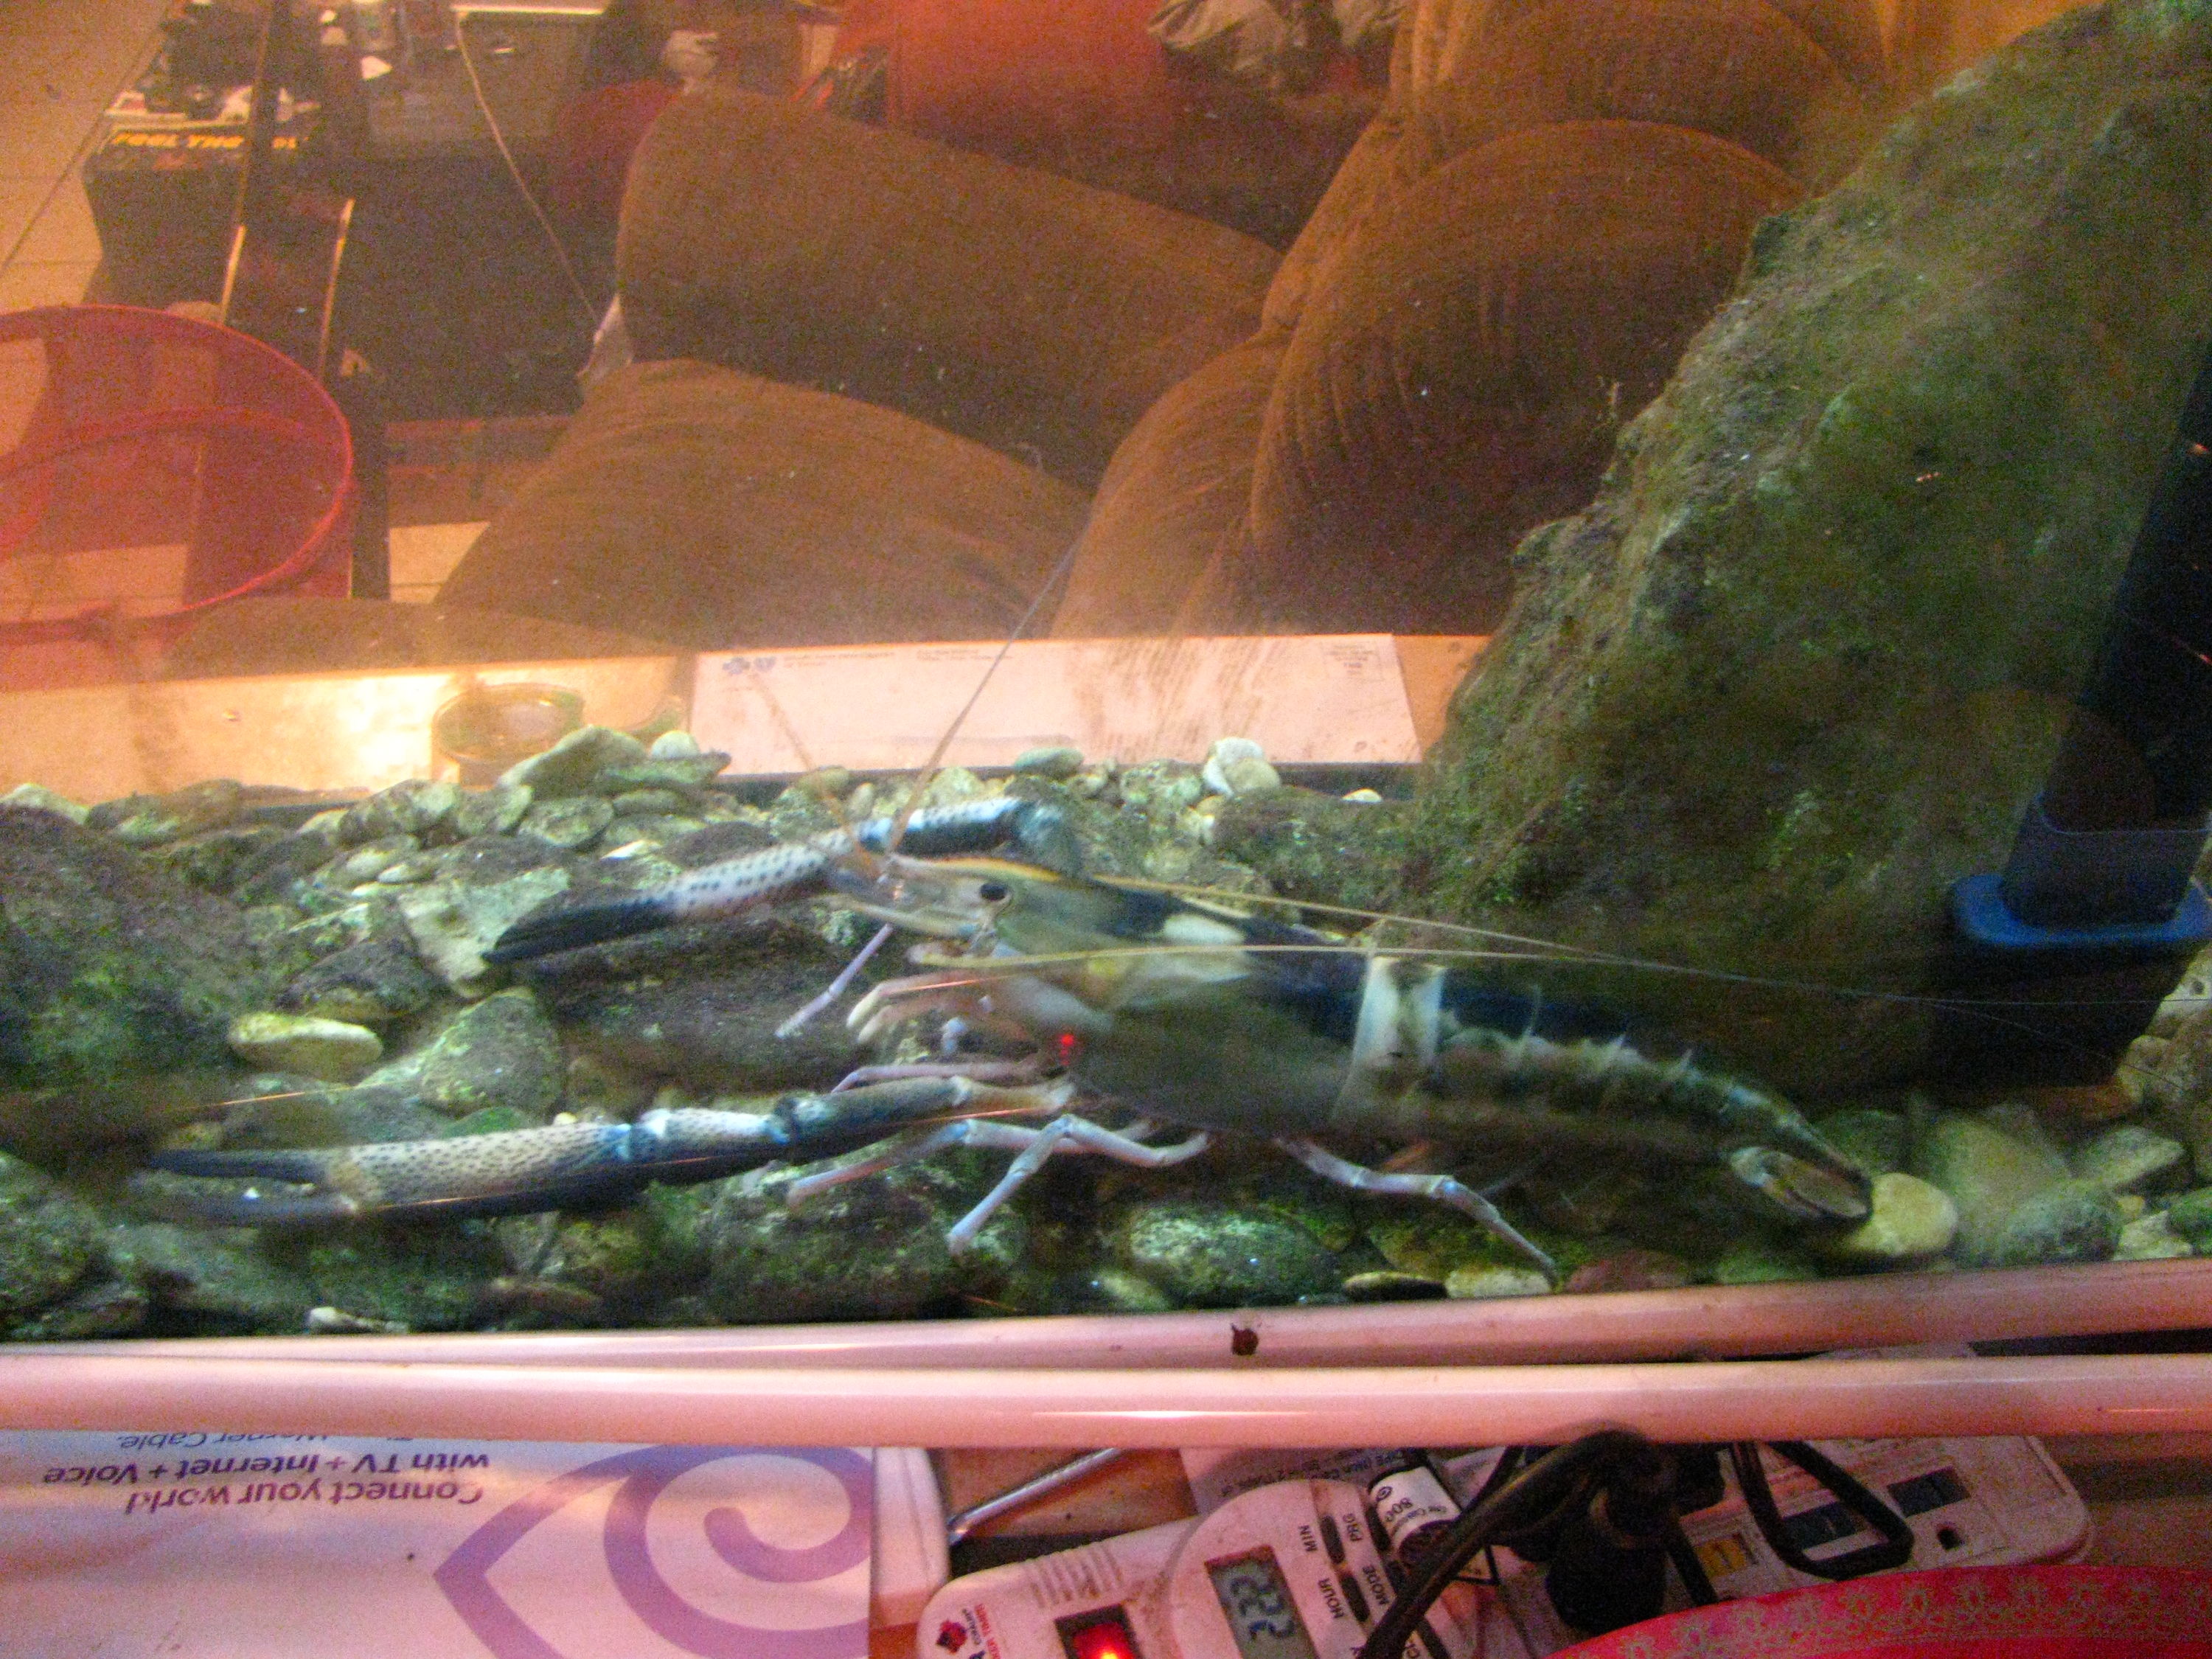 Freshwater prawn